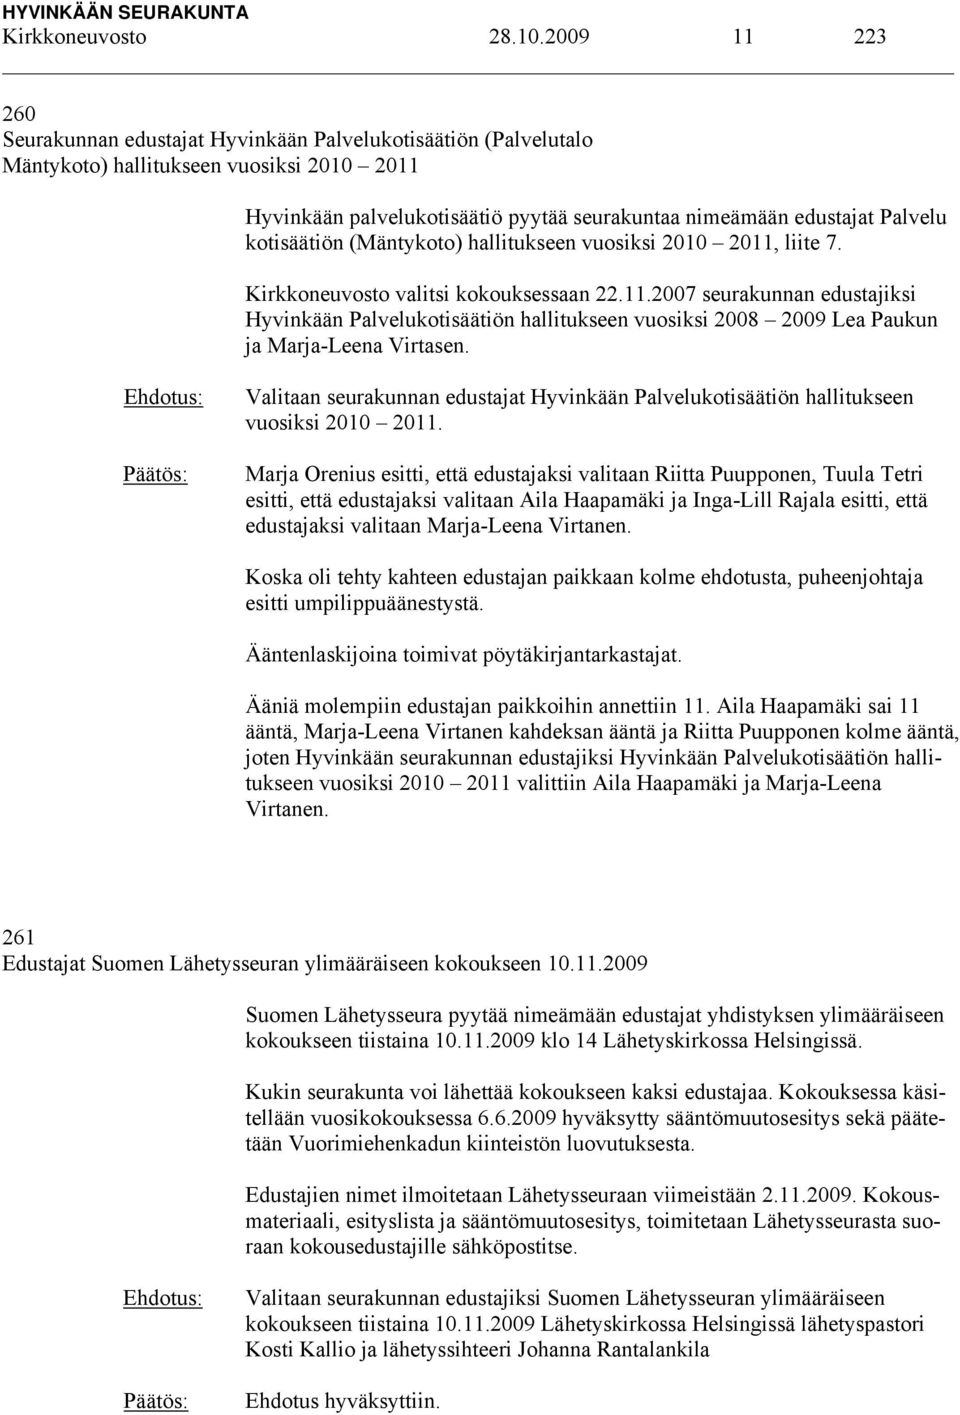 kotisäätiön (Mäntykoto) hallitukseen vuosiksi 2010 2011, liite 7. Kirkkoneuvosto valitsi kokouksessaan 22.11.2007 seurakunnan edustajiksi Hyvinkään Palvelukotisäätiön hallitukseen vuosiksi 2008 2009 Lea Paukun ja Marja-Leena Virtasen.